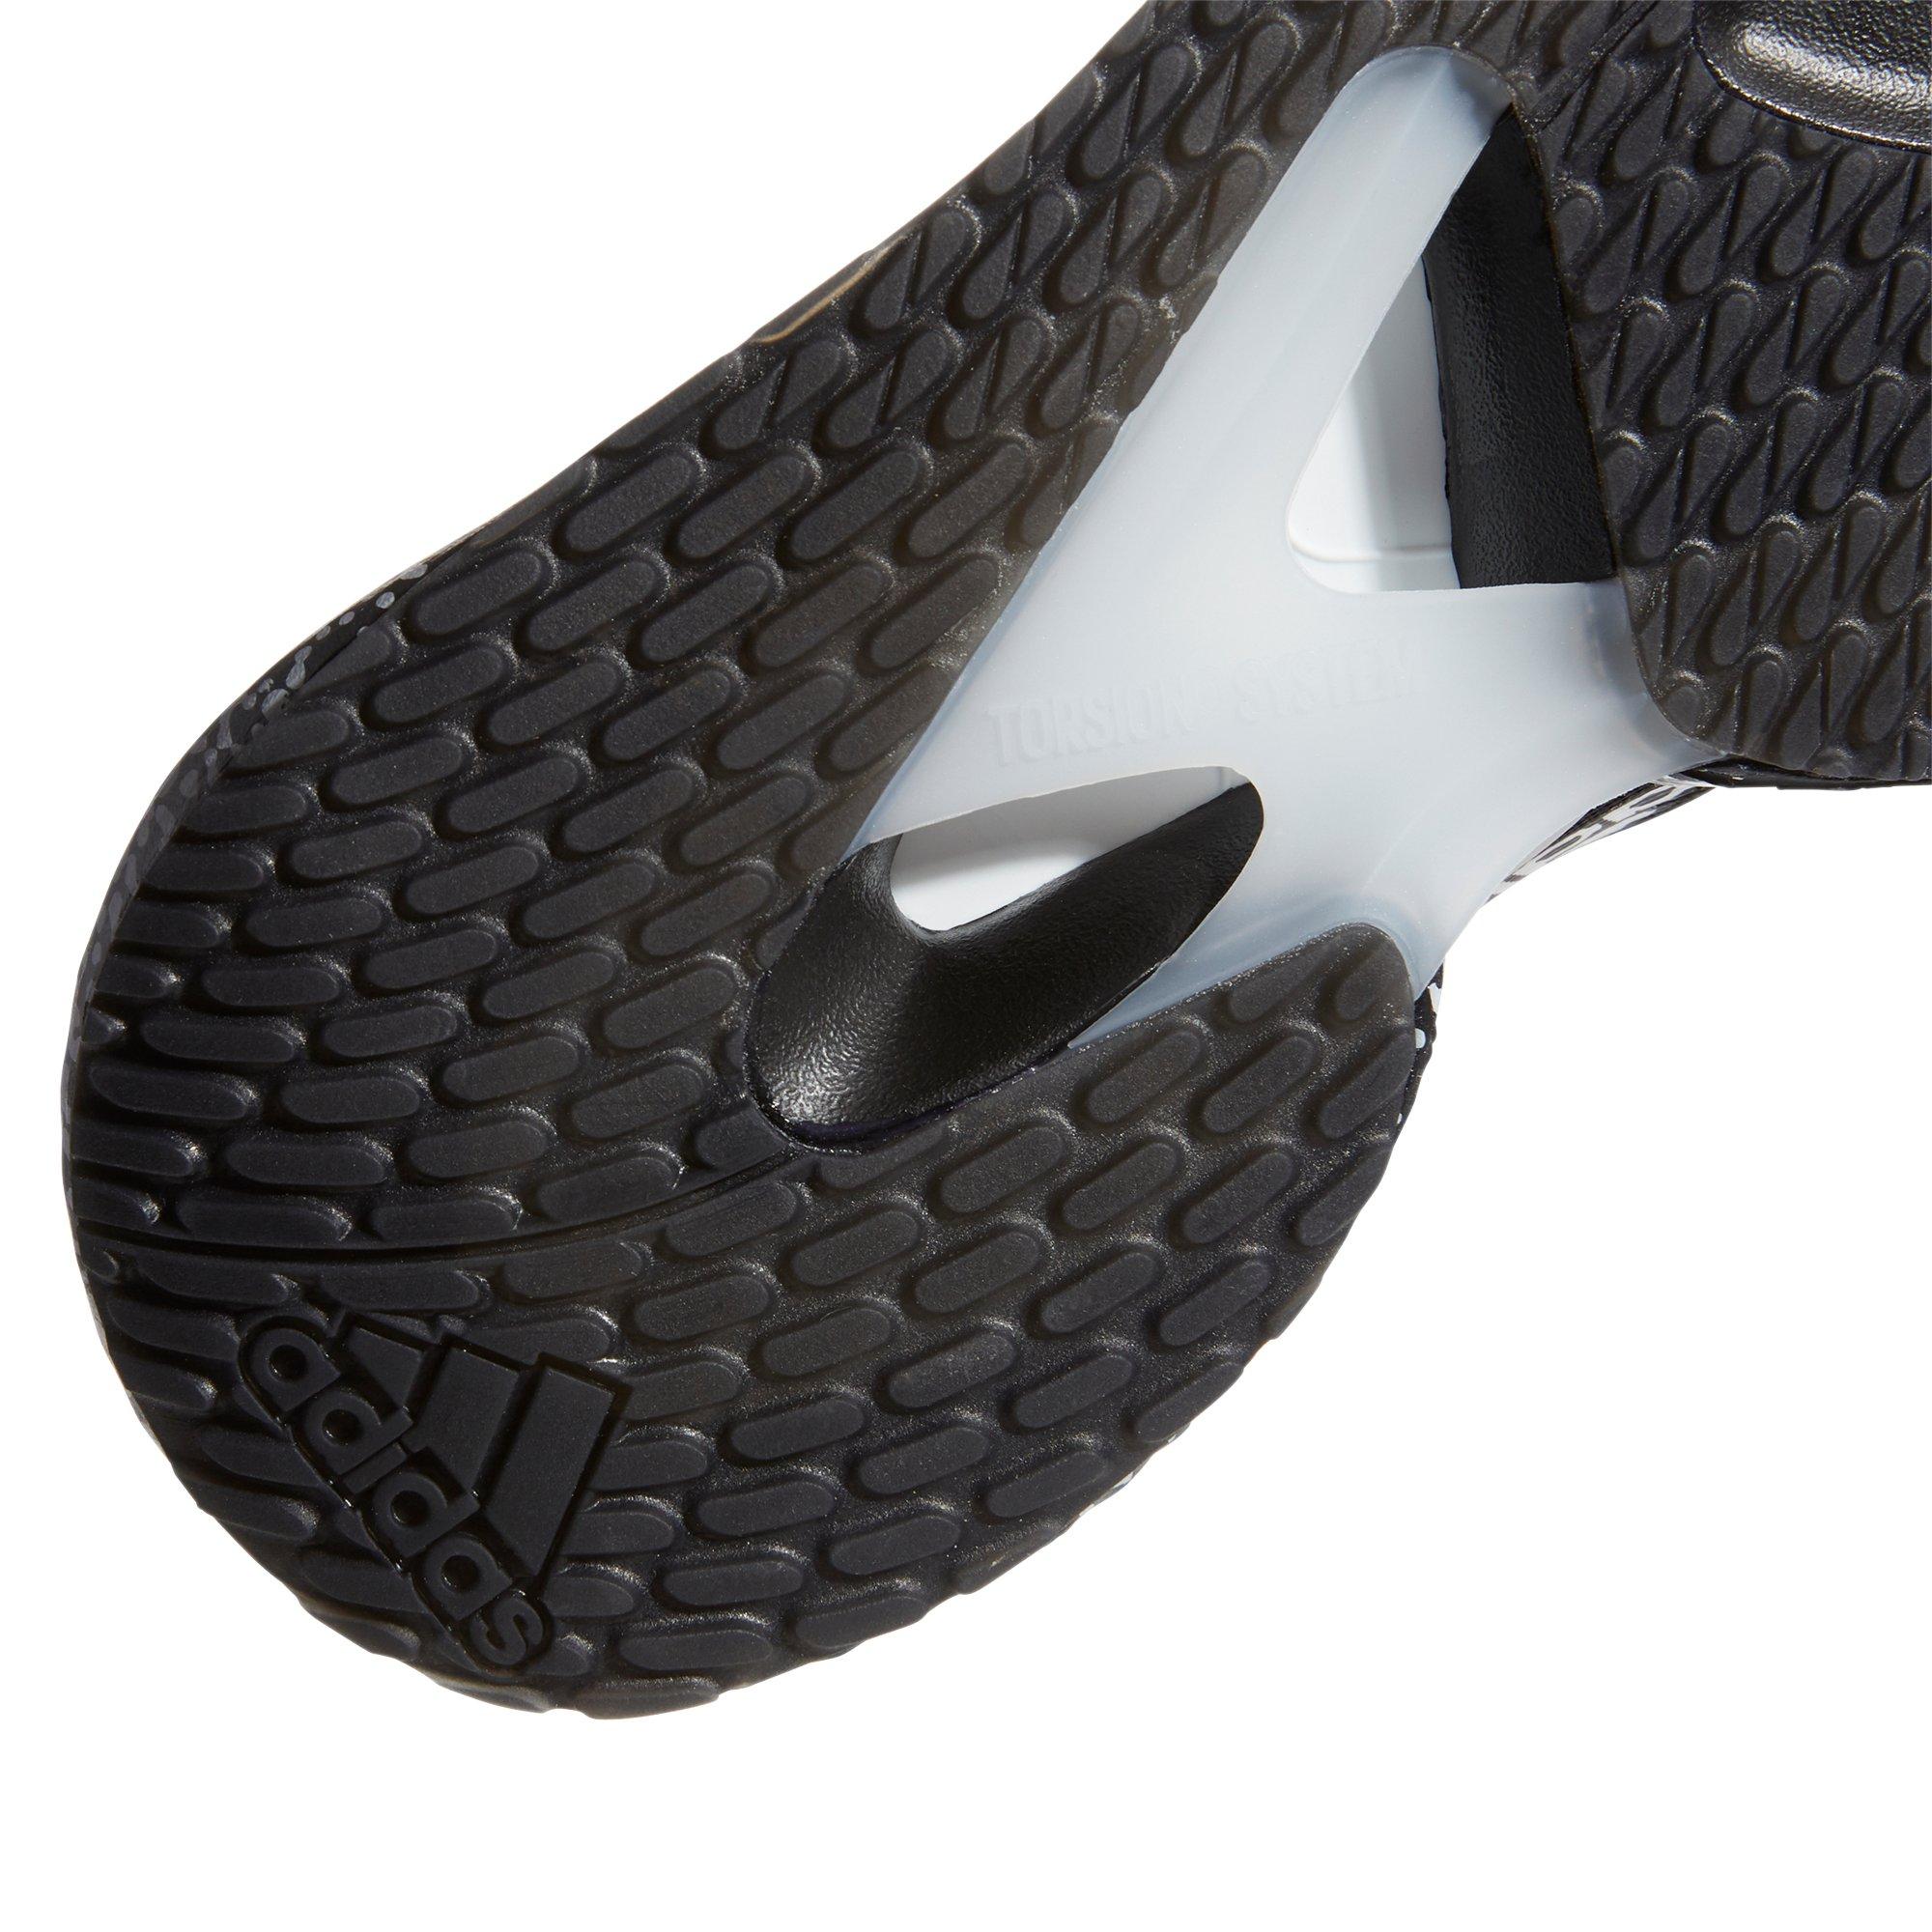 alpha torsion 360 shoes